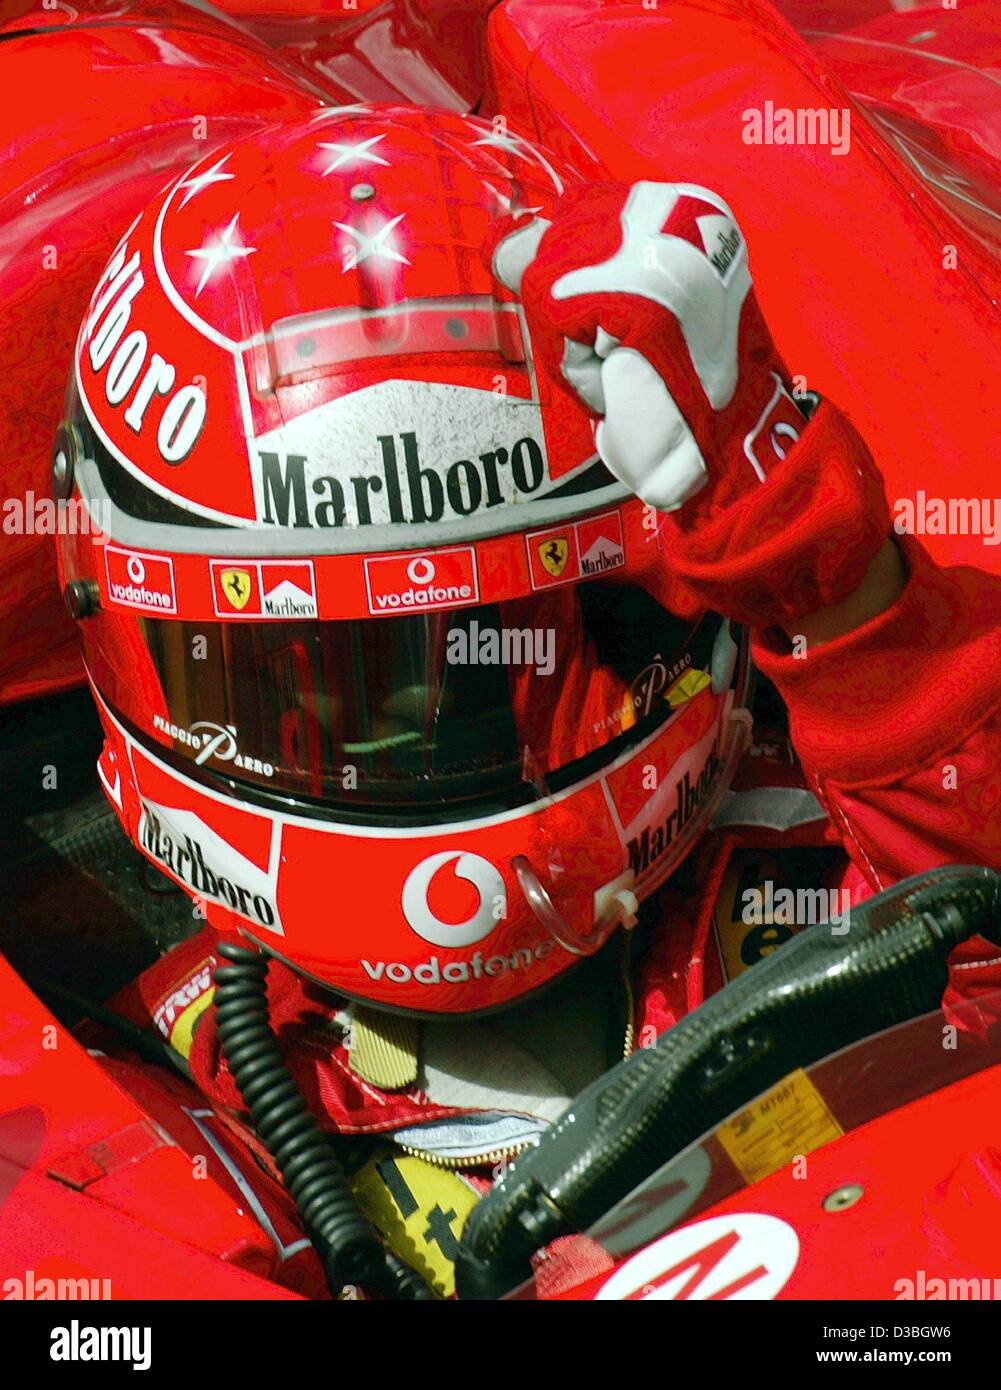 (Afp) - L'allemand champion du monde de Formule 1 Michael Schumacher (Ferrari) frappe sa main à son casque comme un geste indiquant qu'il a bientôt après avoir remporté le Grand Prix du Canada sur le circuit Gilles Villeneuve circuit de Formule 1 à Montréal, Canada, 15 juin 2003. Michael Schumacher remporte le r Banque D'Images